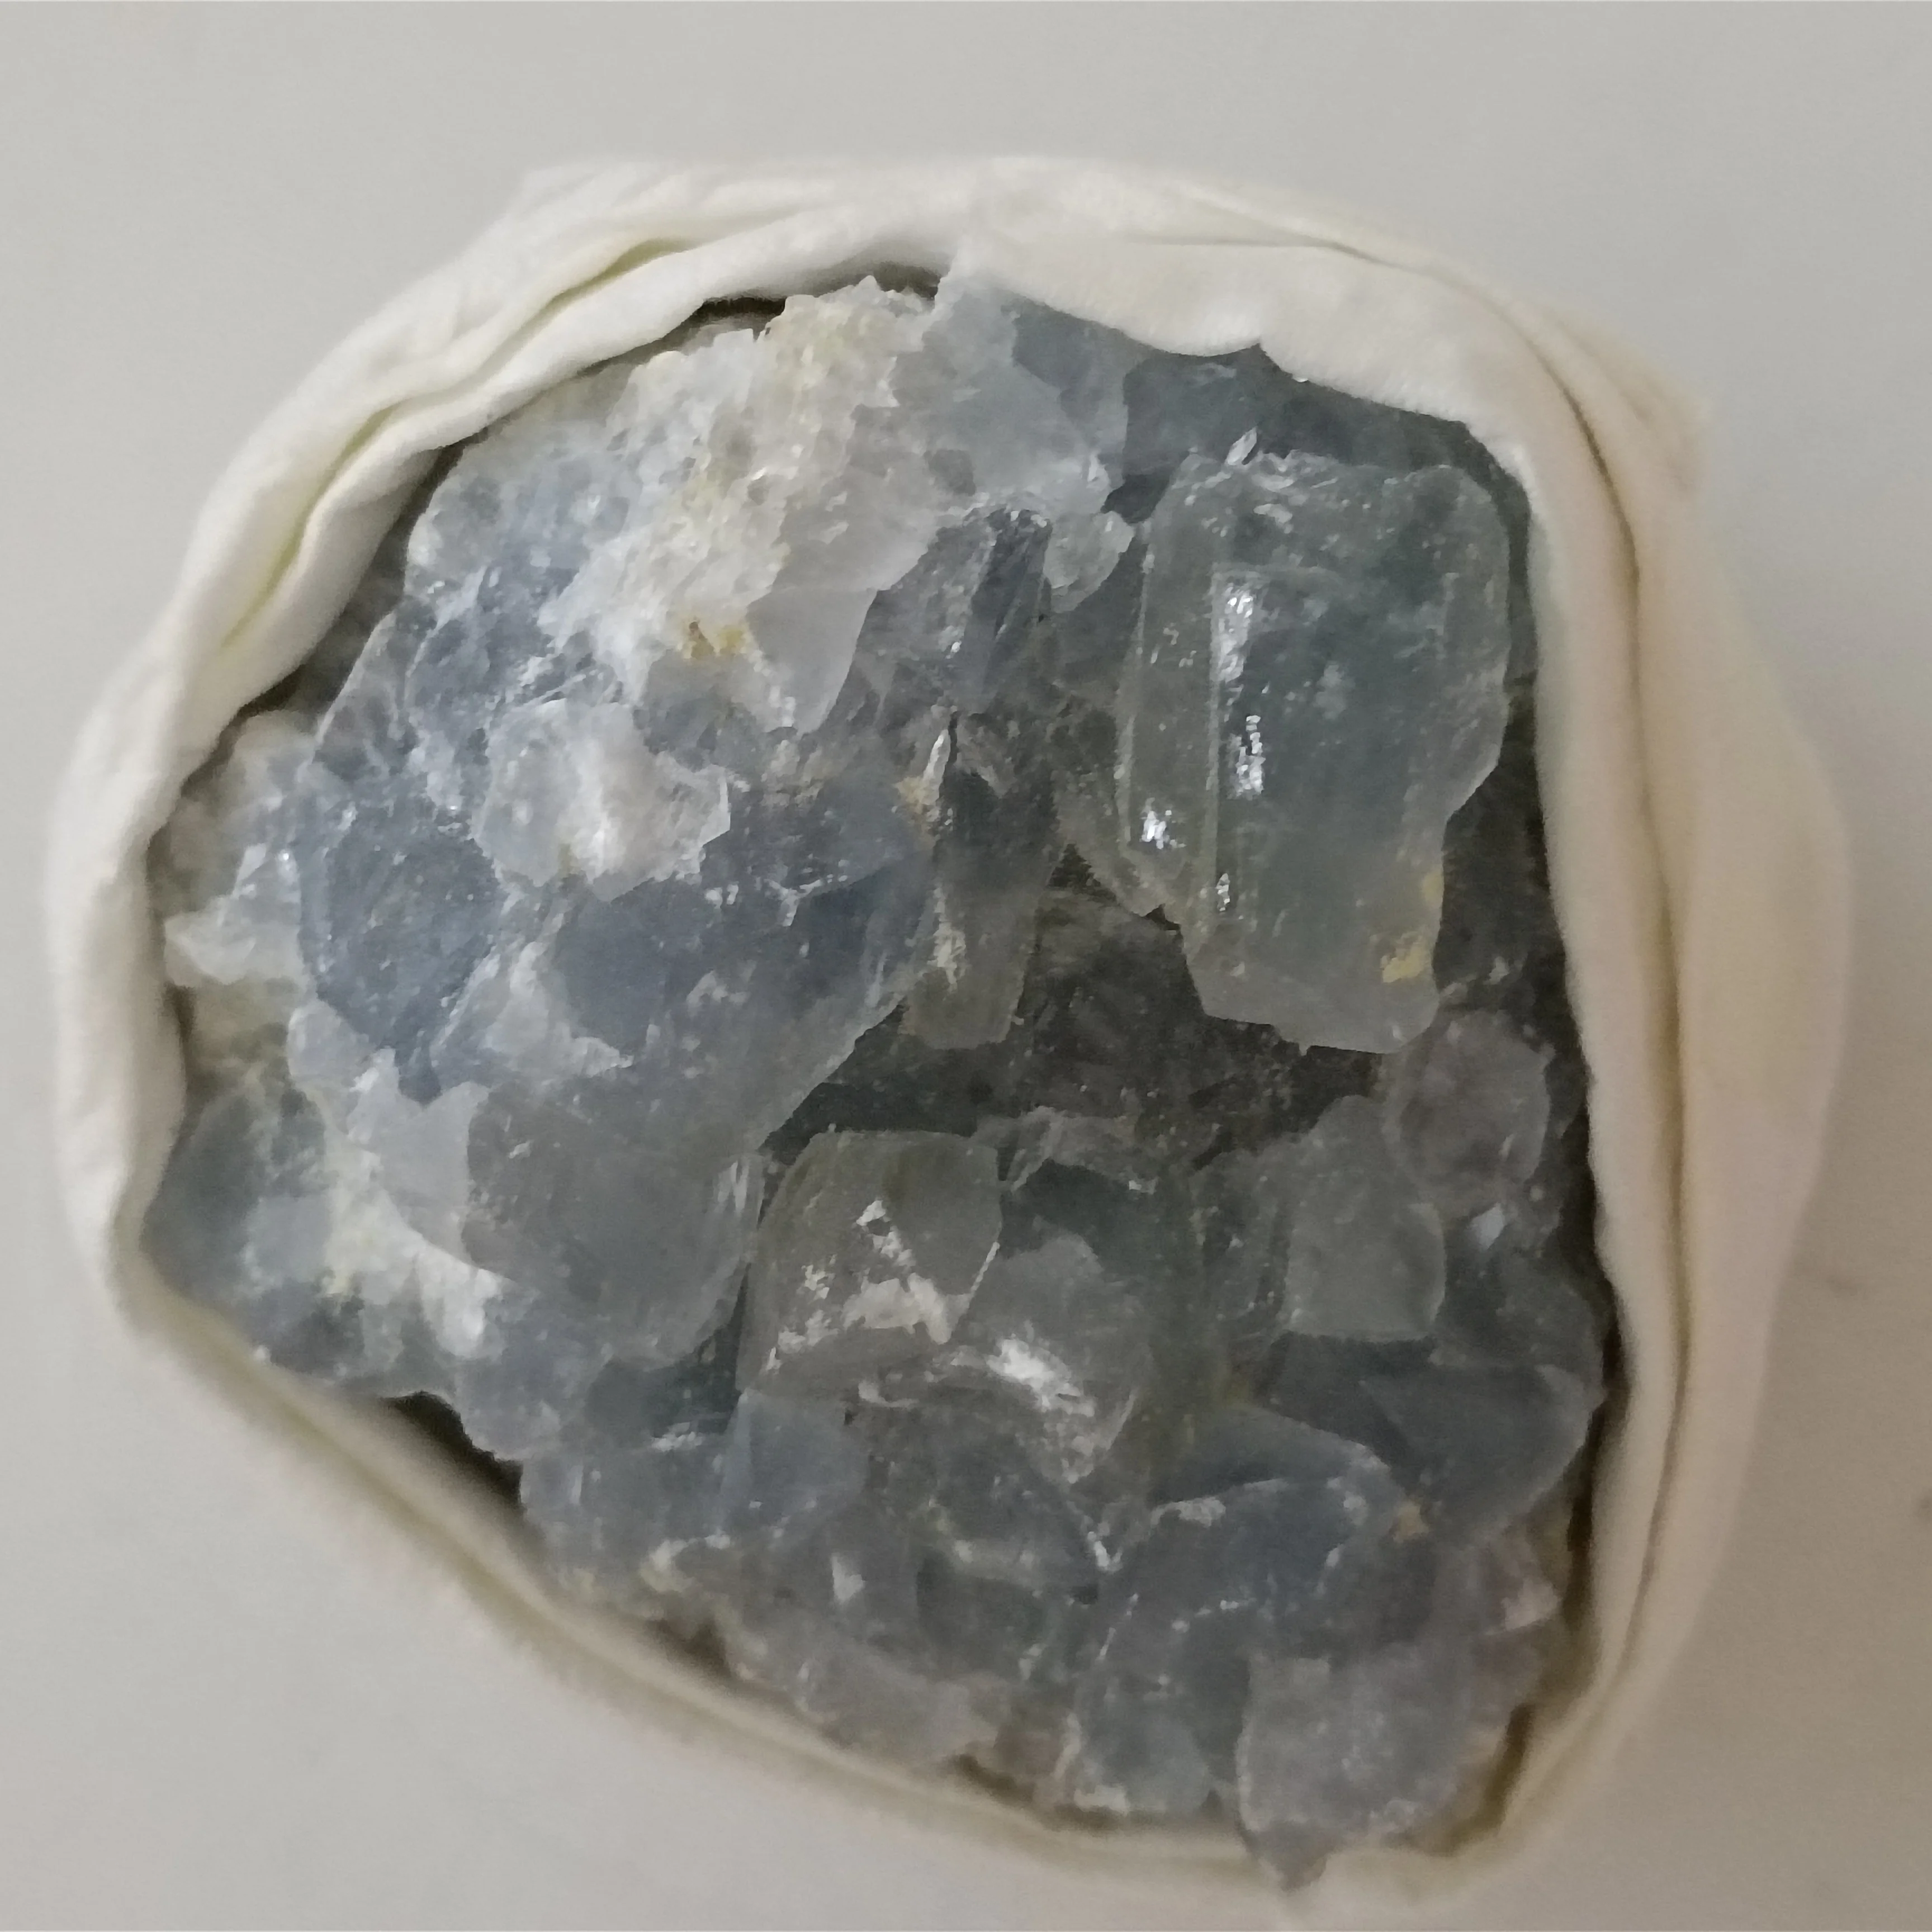 1pc Natural crystals Blue Celestite Crystal rough Cluster Rock Kyanite healing reiki Mineral Specimen decoration ornamental